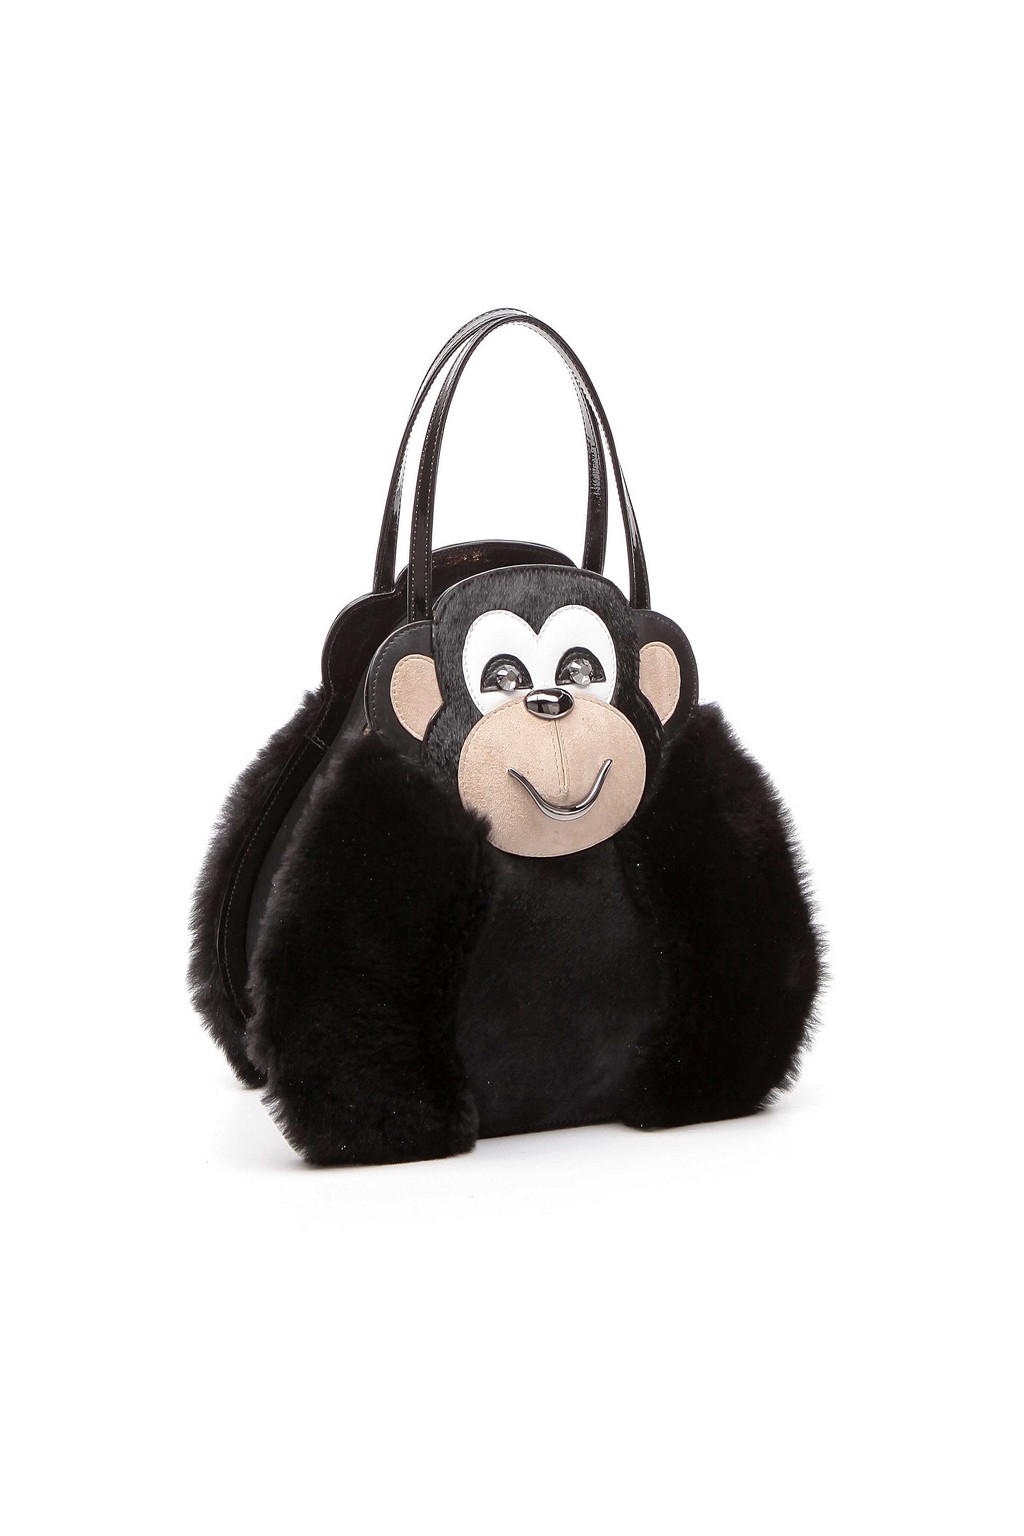 Braccialini borse: la Monkey Bag per il Capodanno Cinese